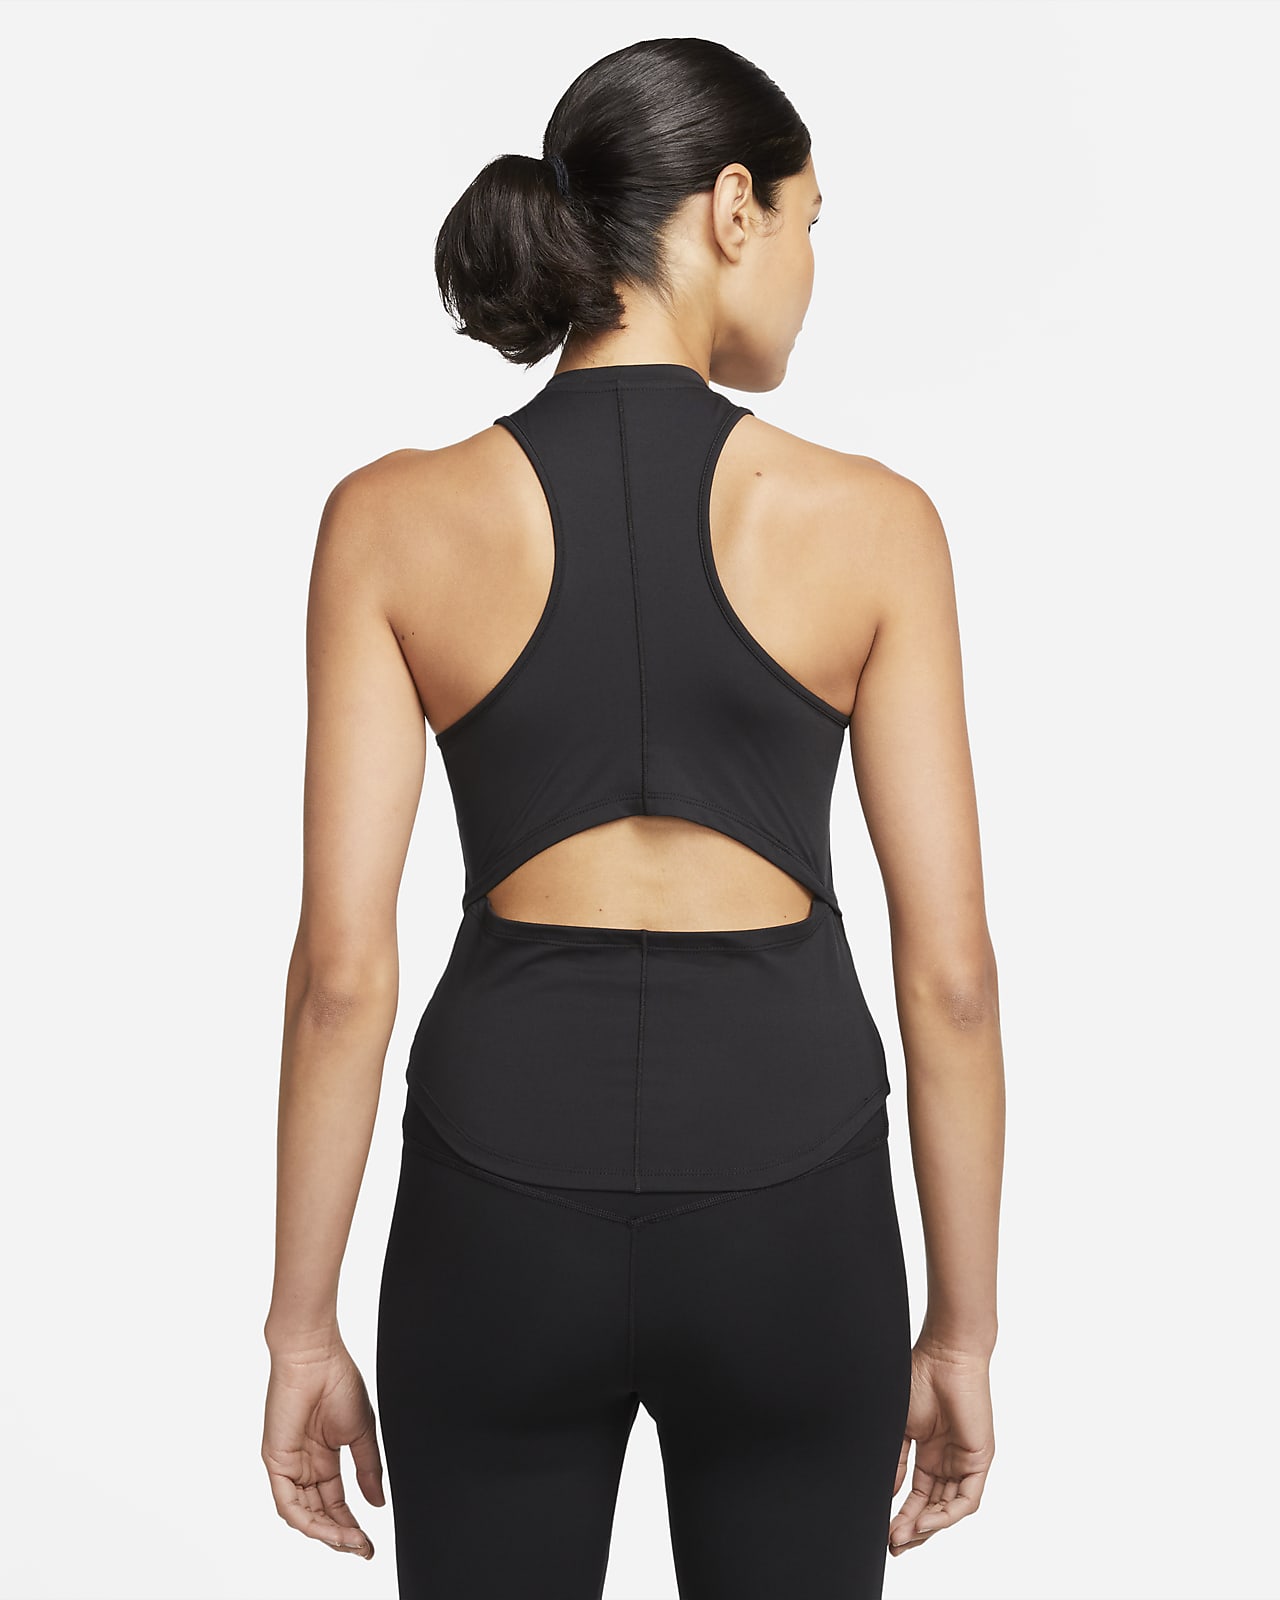 Nike Dri-FIT One Luxe rövid szabású női trikó